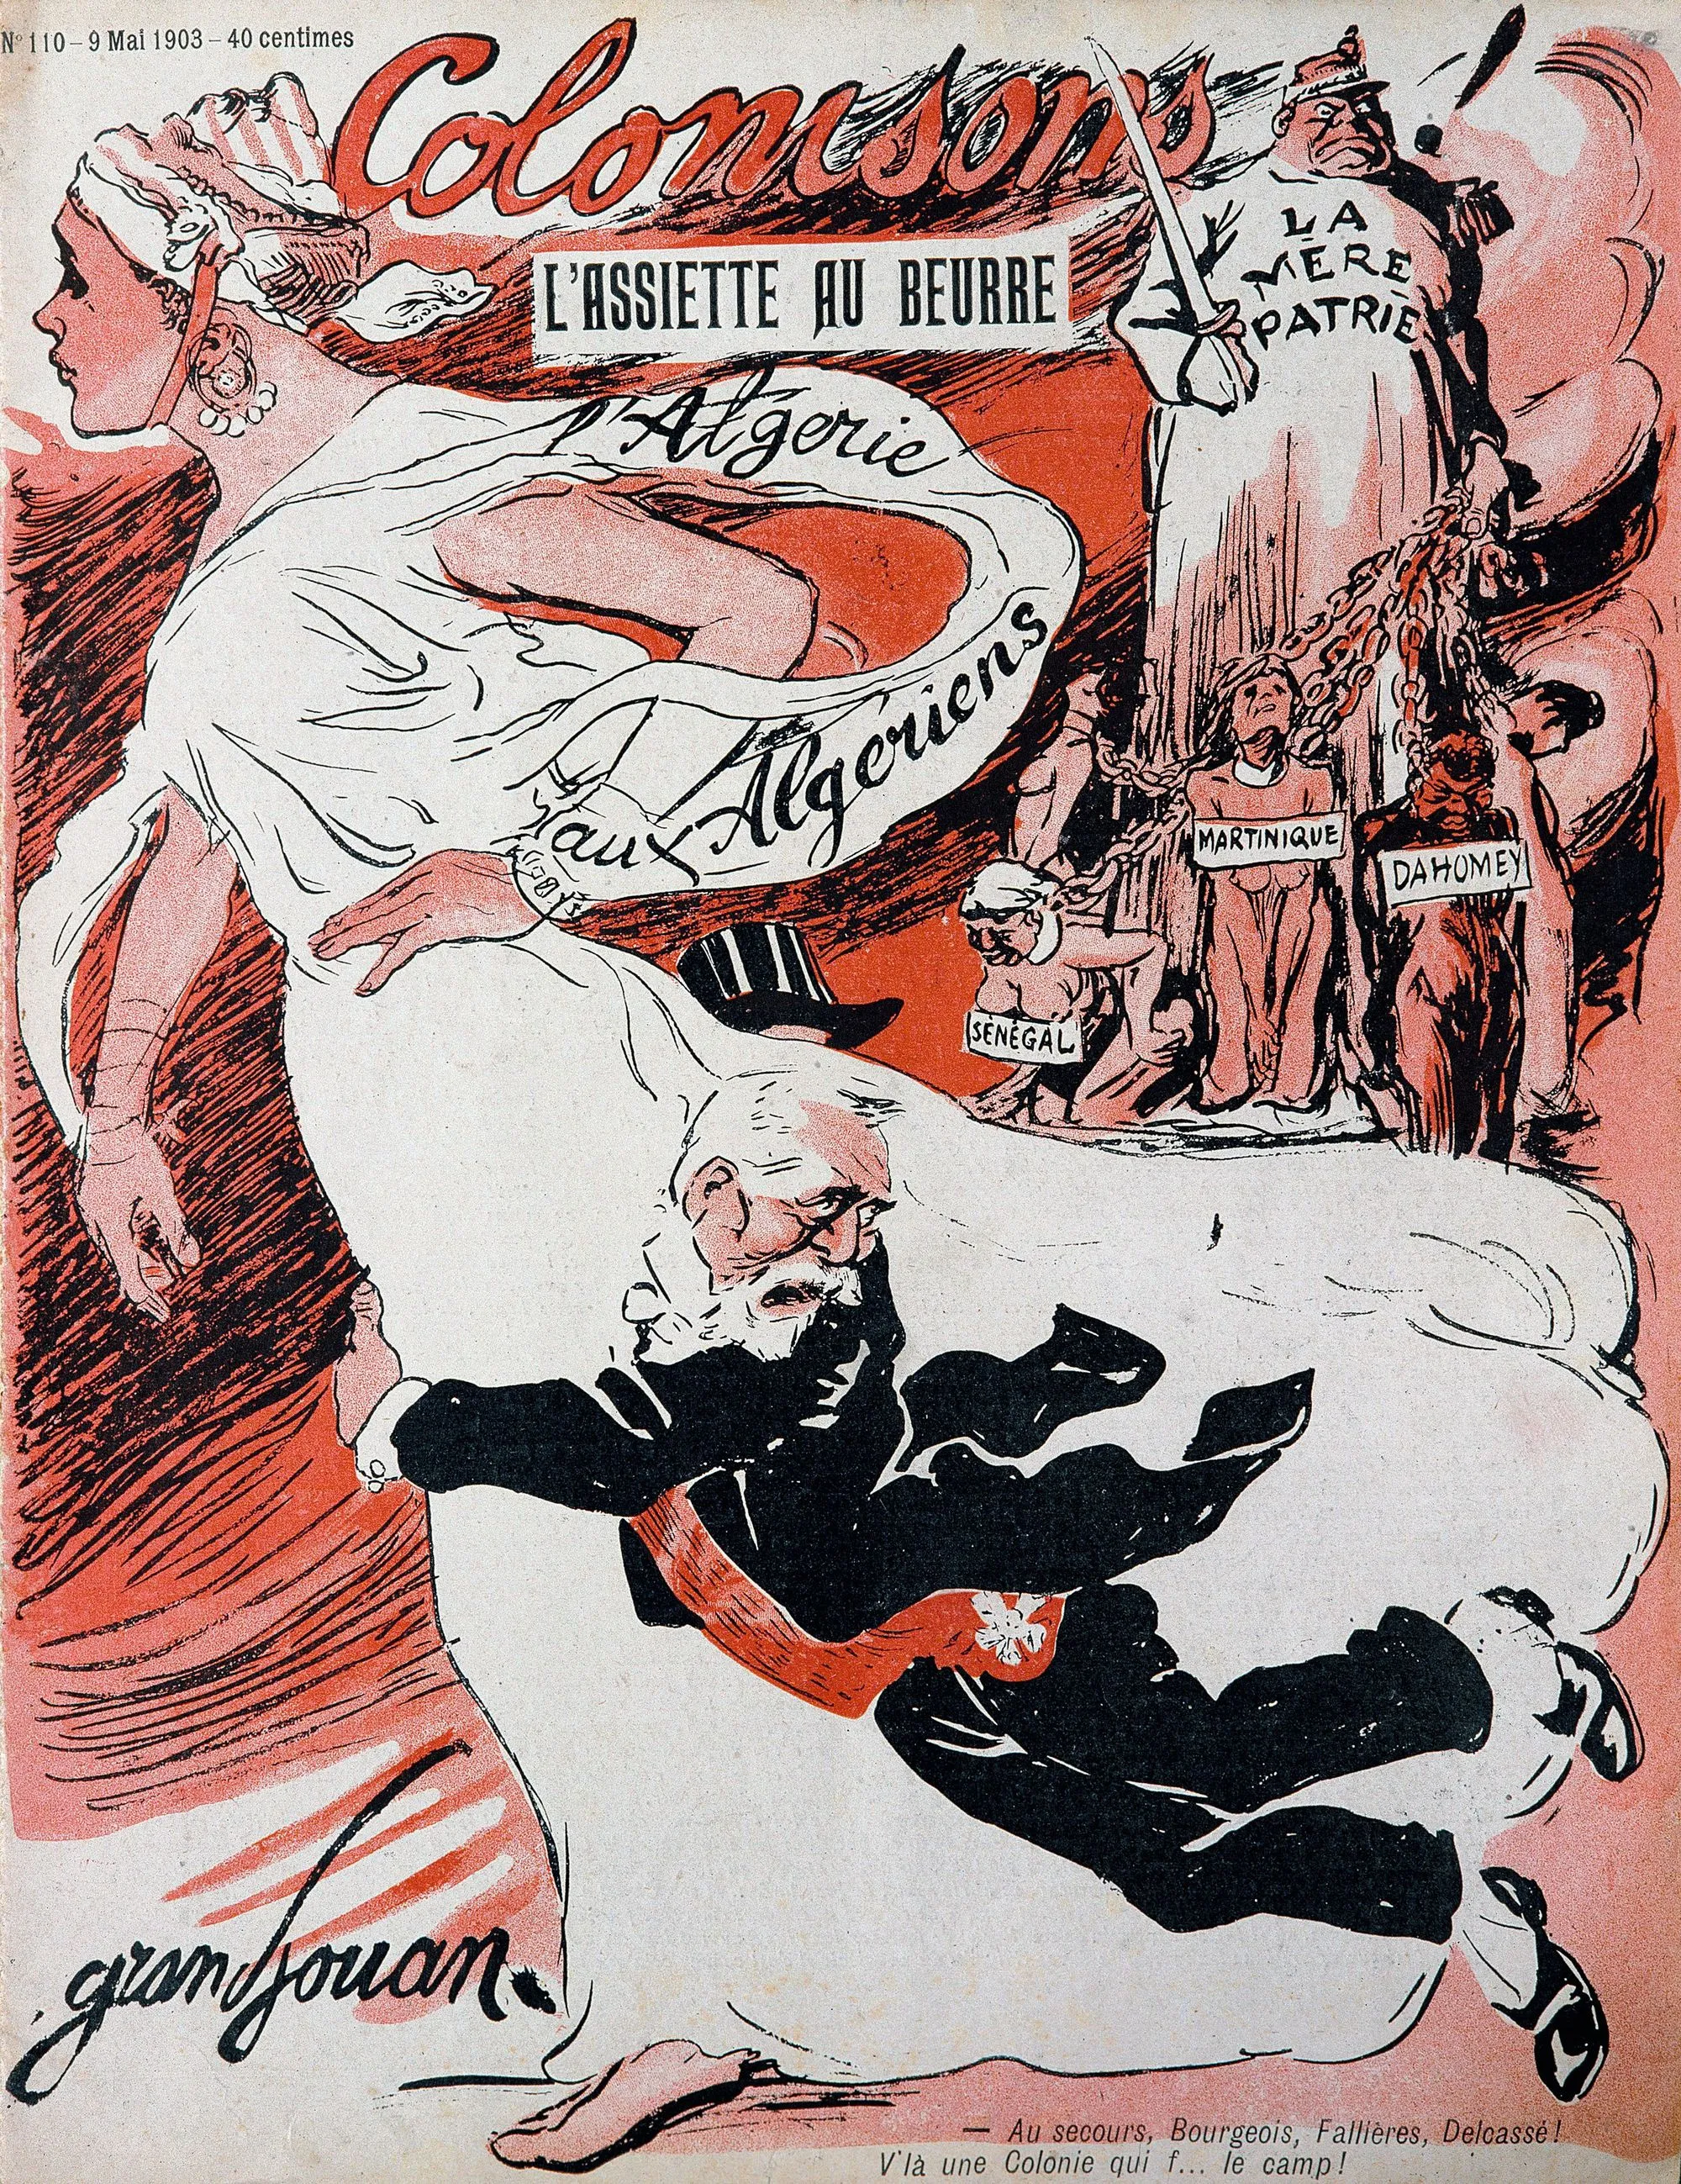 « Colonisons ! », L'Assiette au beurre, n° 110, 9 mai 1903